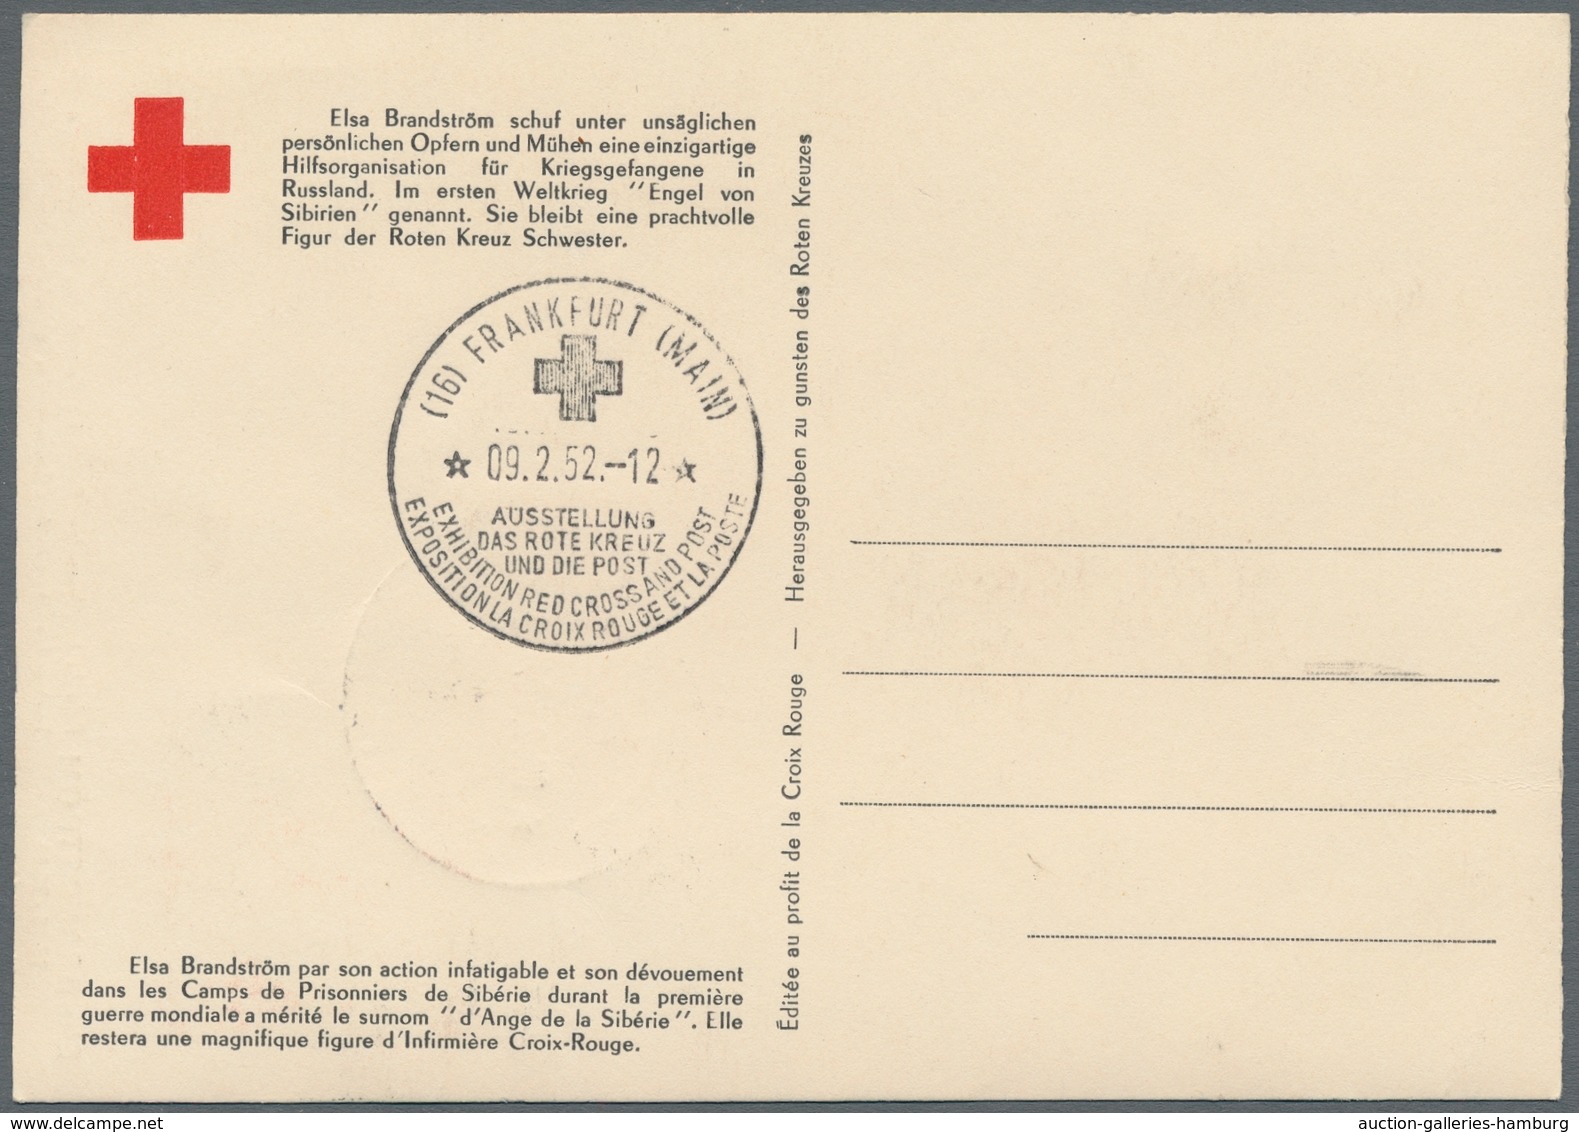 Bundesrepublik Deutschland: 1951-57, 12 meist verschiedene Maximumkarten, dabei "Mona Lisa", "Otto M